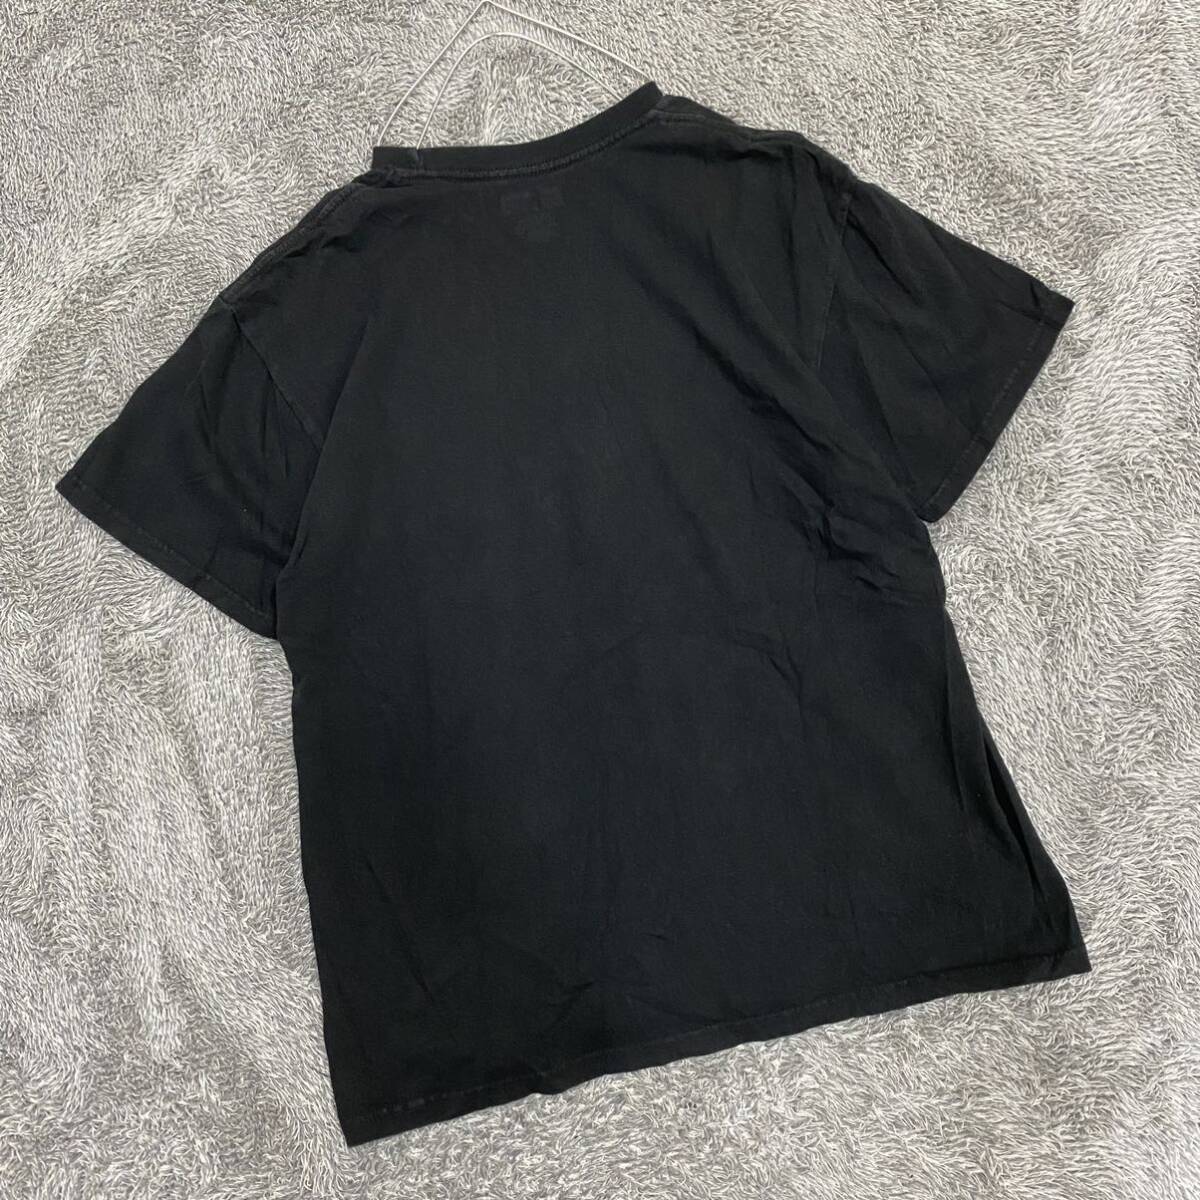 NFL ナショナルフットボールリーグ Tシャツ 半袖カットソー サイズL ブラック 黒 メンズ トップス 最落なし （A19）_画像2